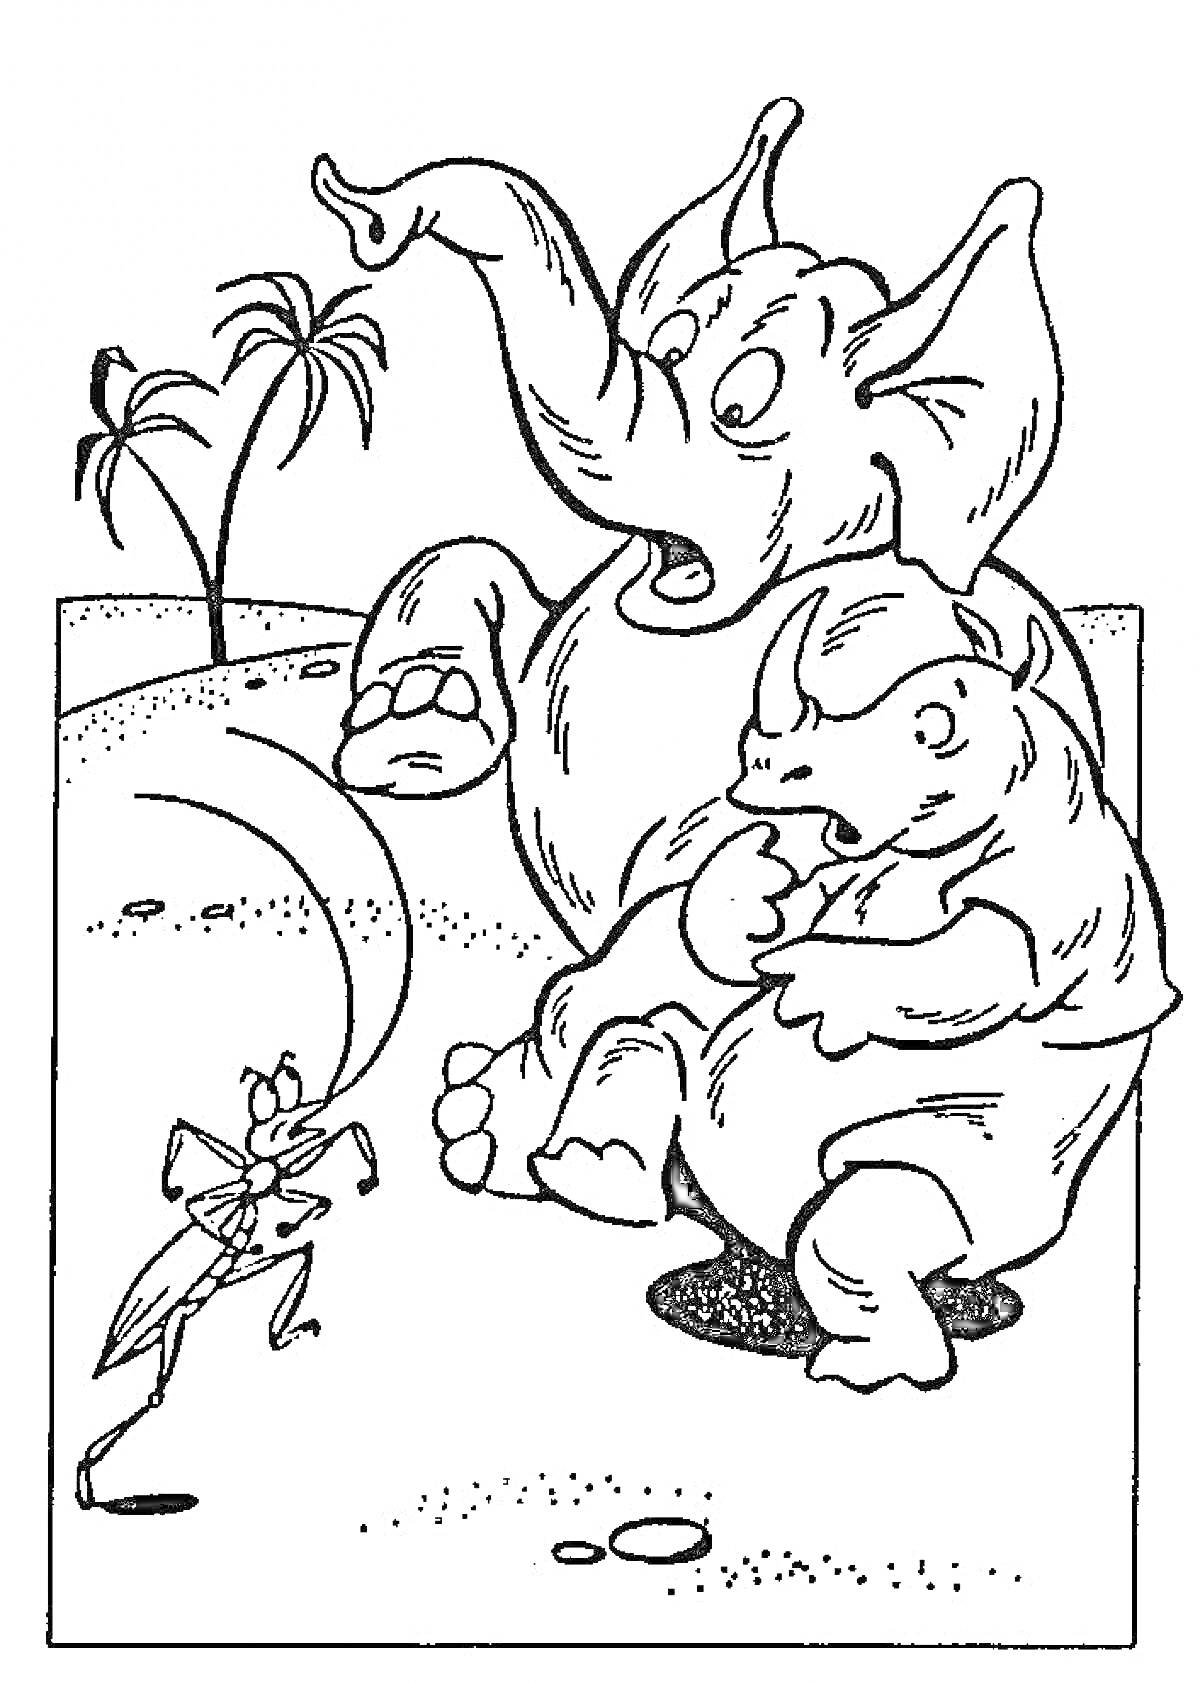 Муравей, слон и носорог на фоне пальм